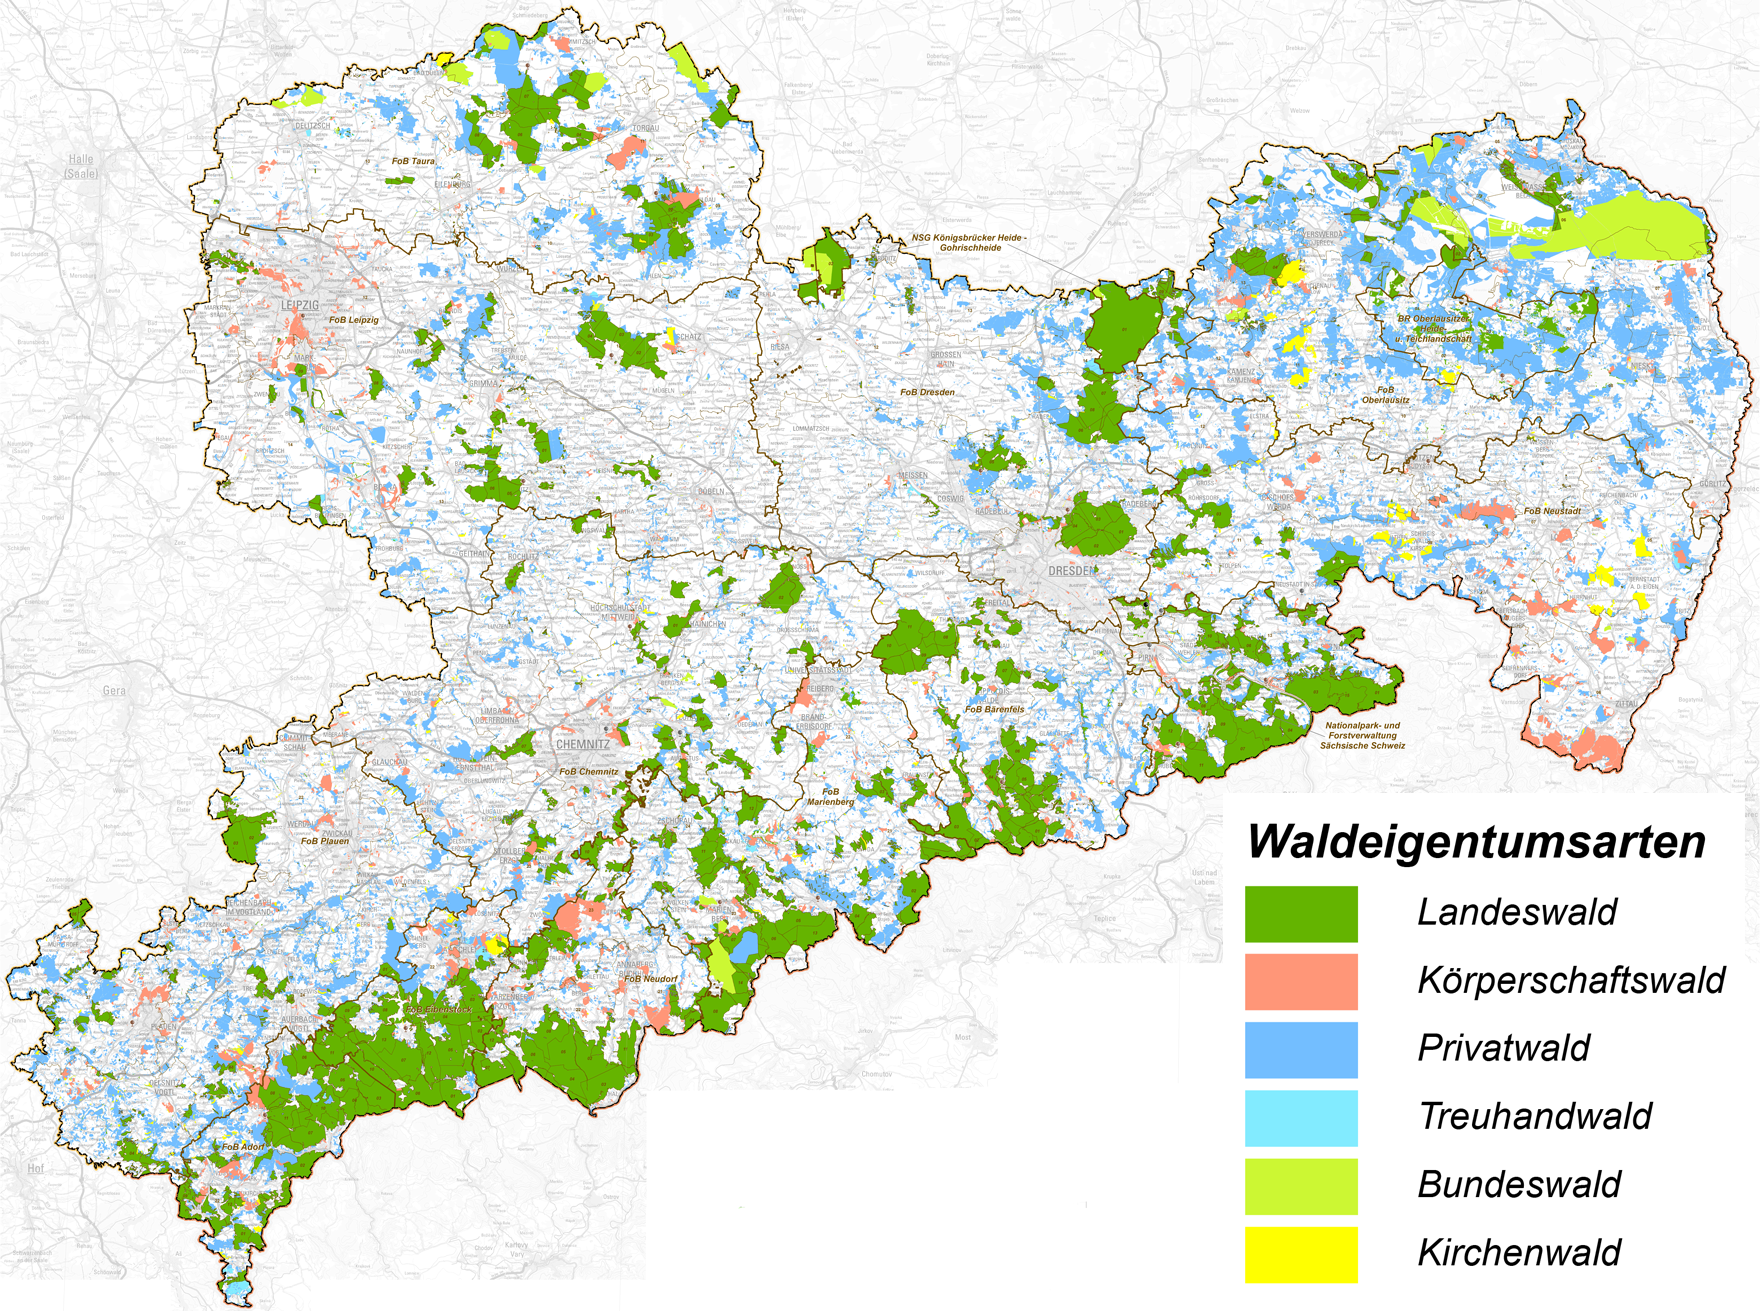 Waldeigentumsarten in Sachsen